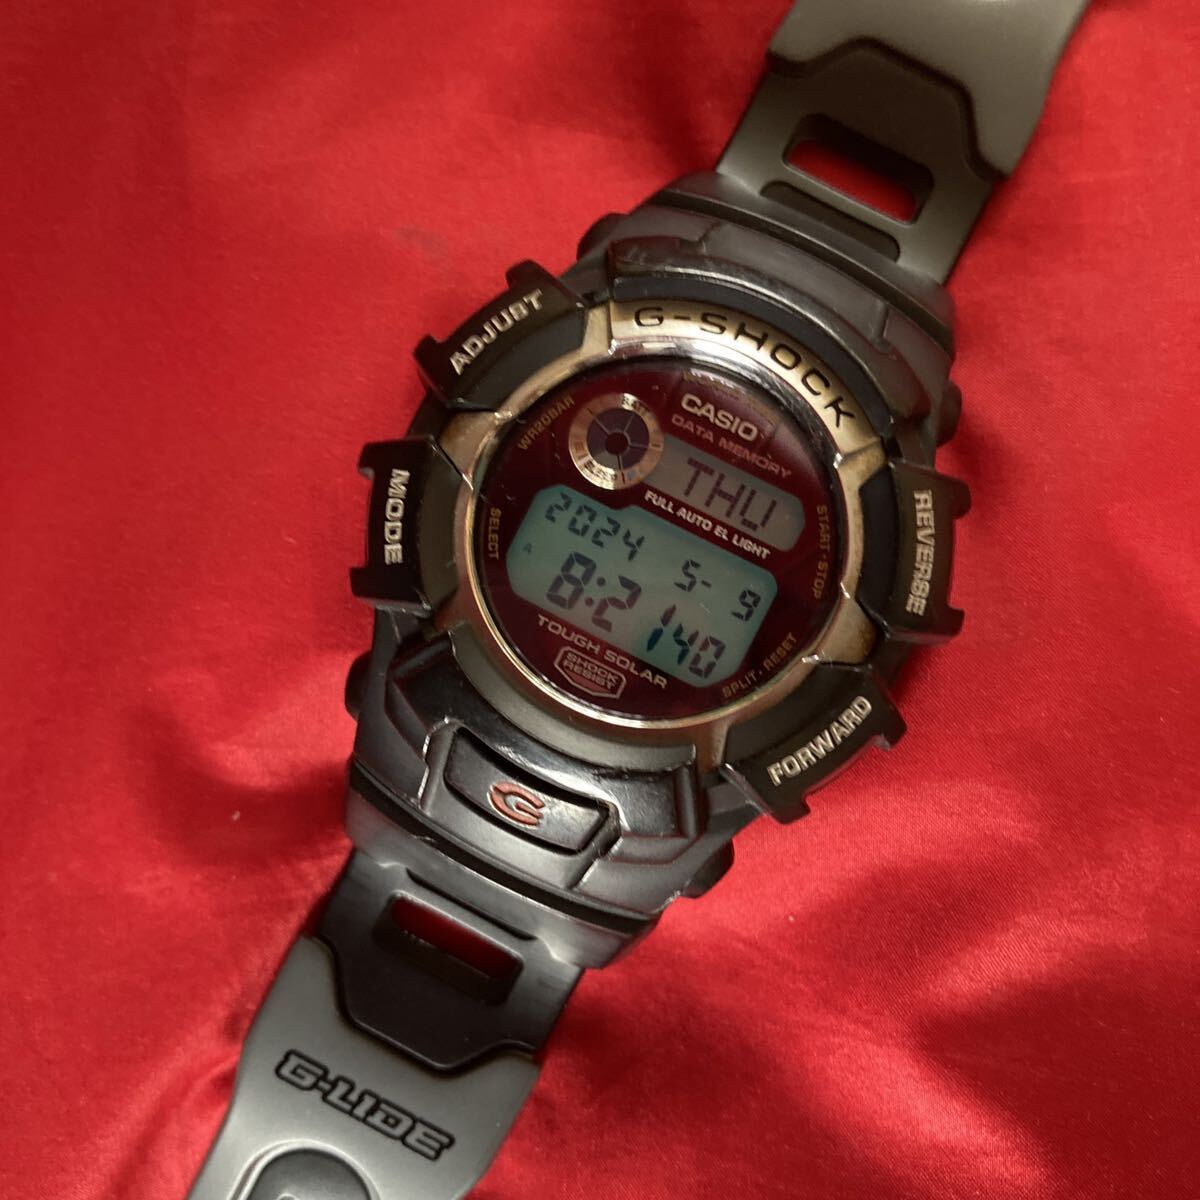 ★即決有★限定G-LIDE GL-170 G-SHOCK カシオ腕時計 CASIO グライド サーフィン Gショック★ヴィンテージ デジタル 腕時計 カシオ CASIO_画像8